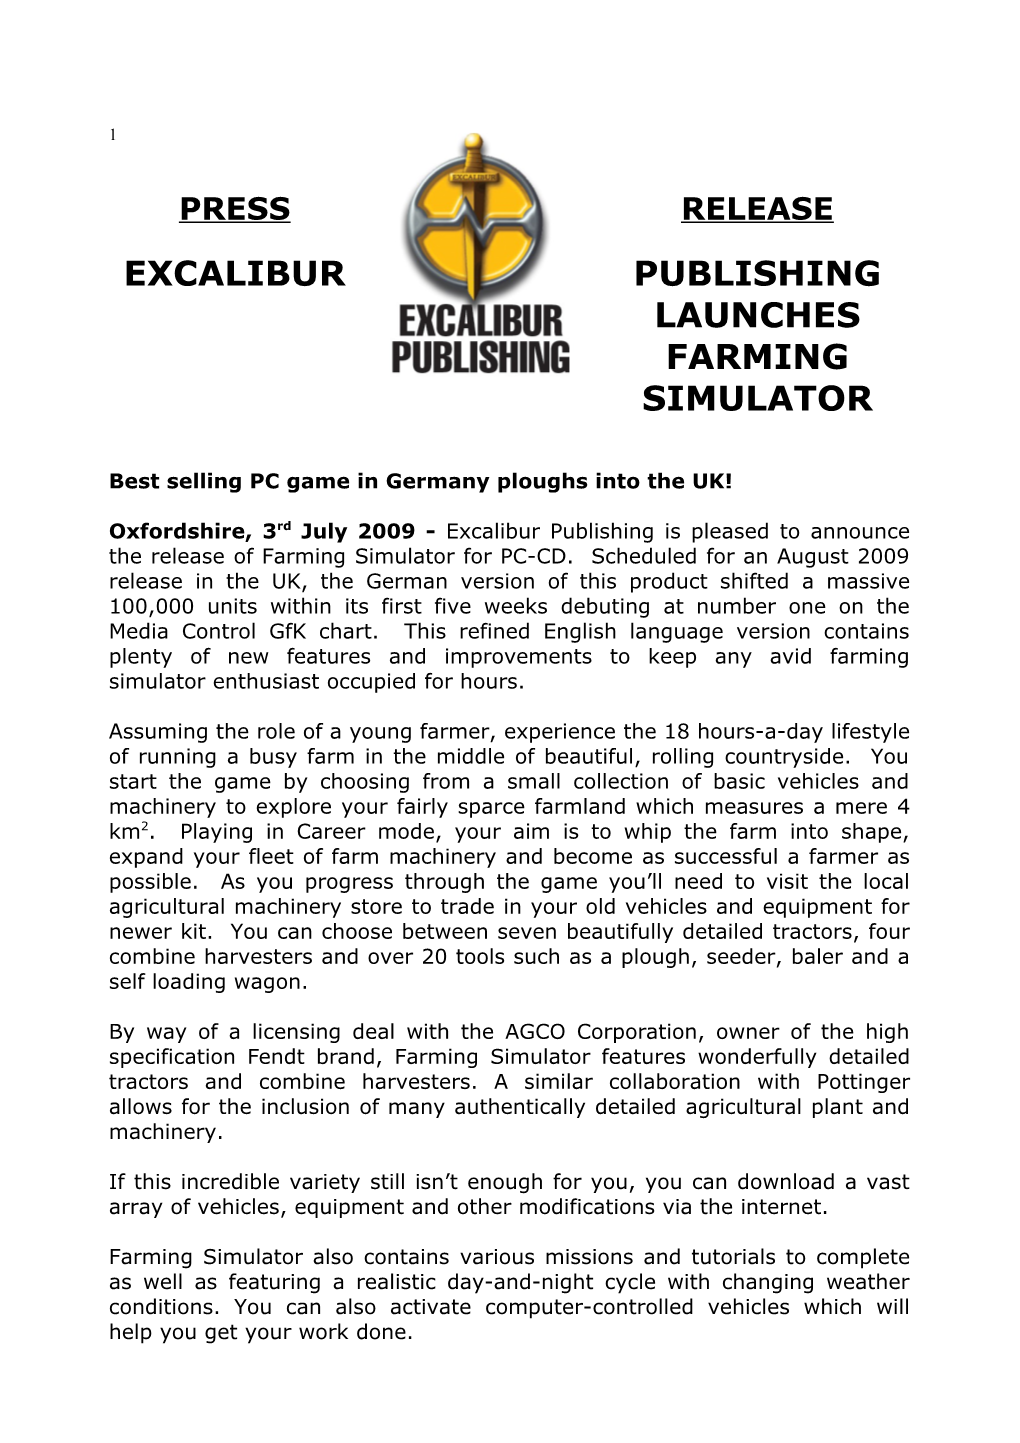 Excalibur Publishing Launches Farming Simulator